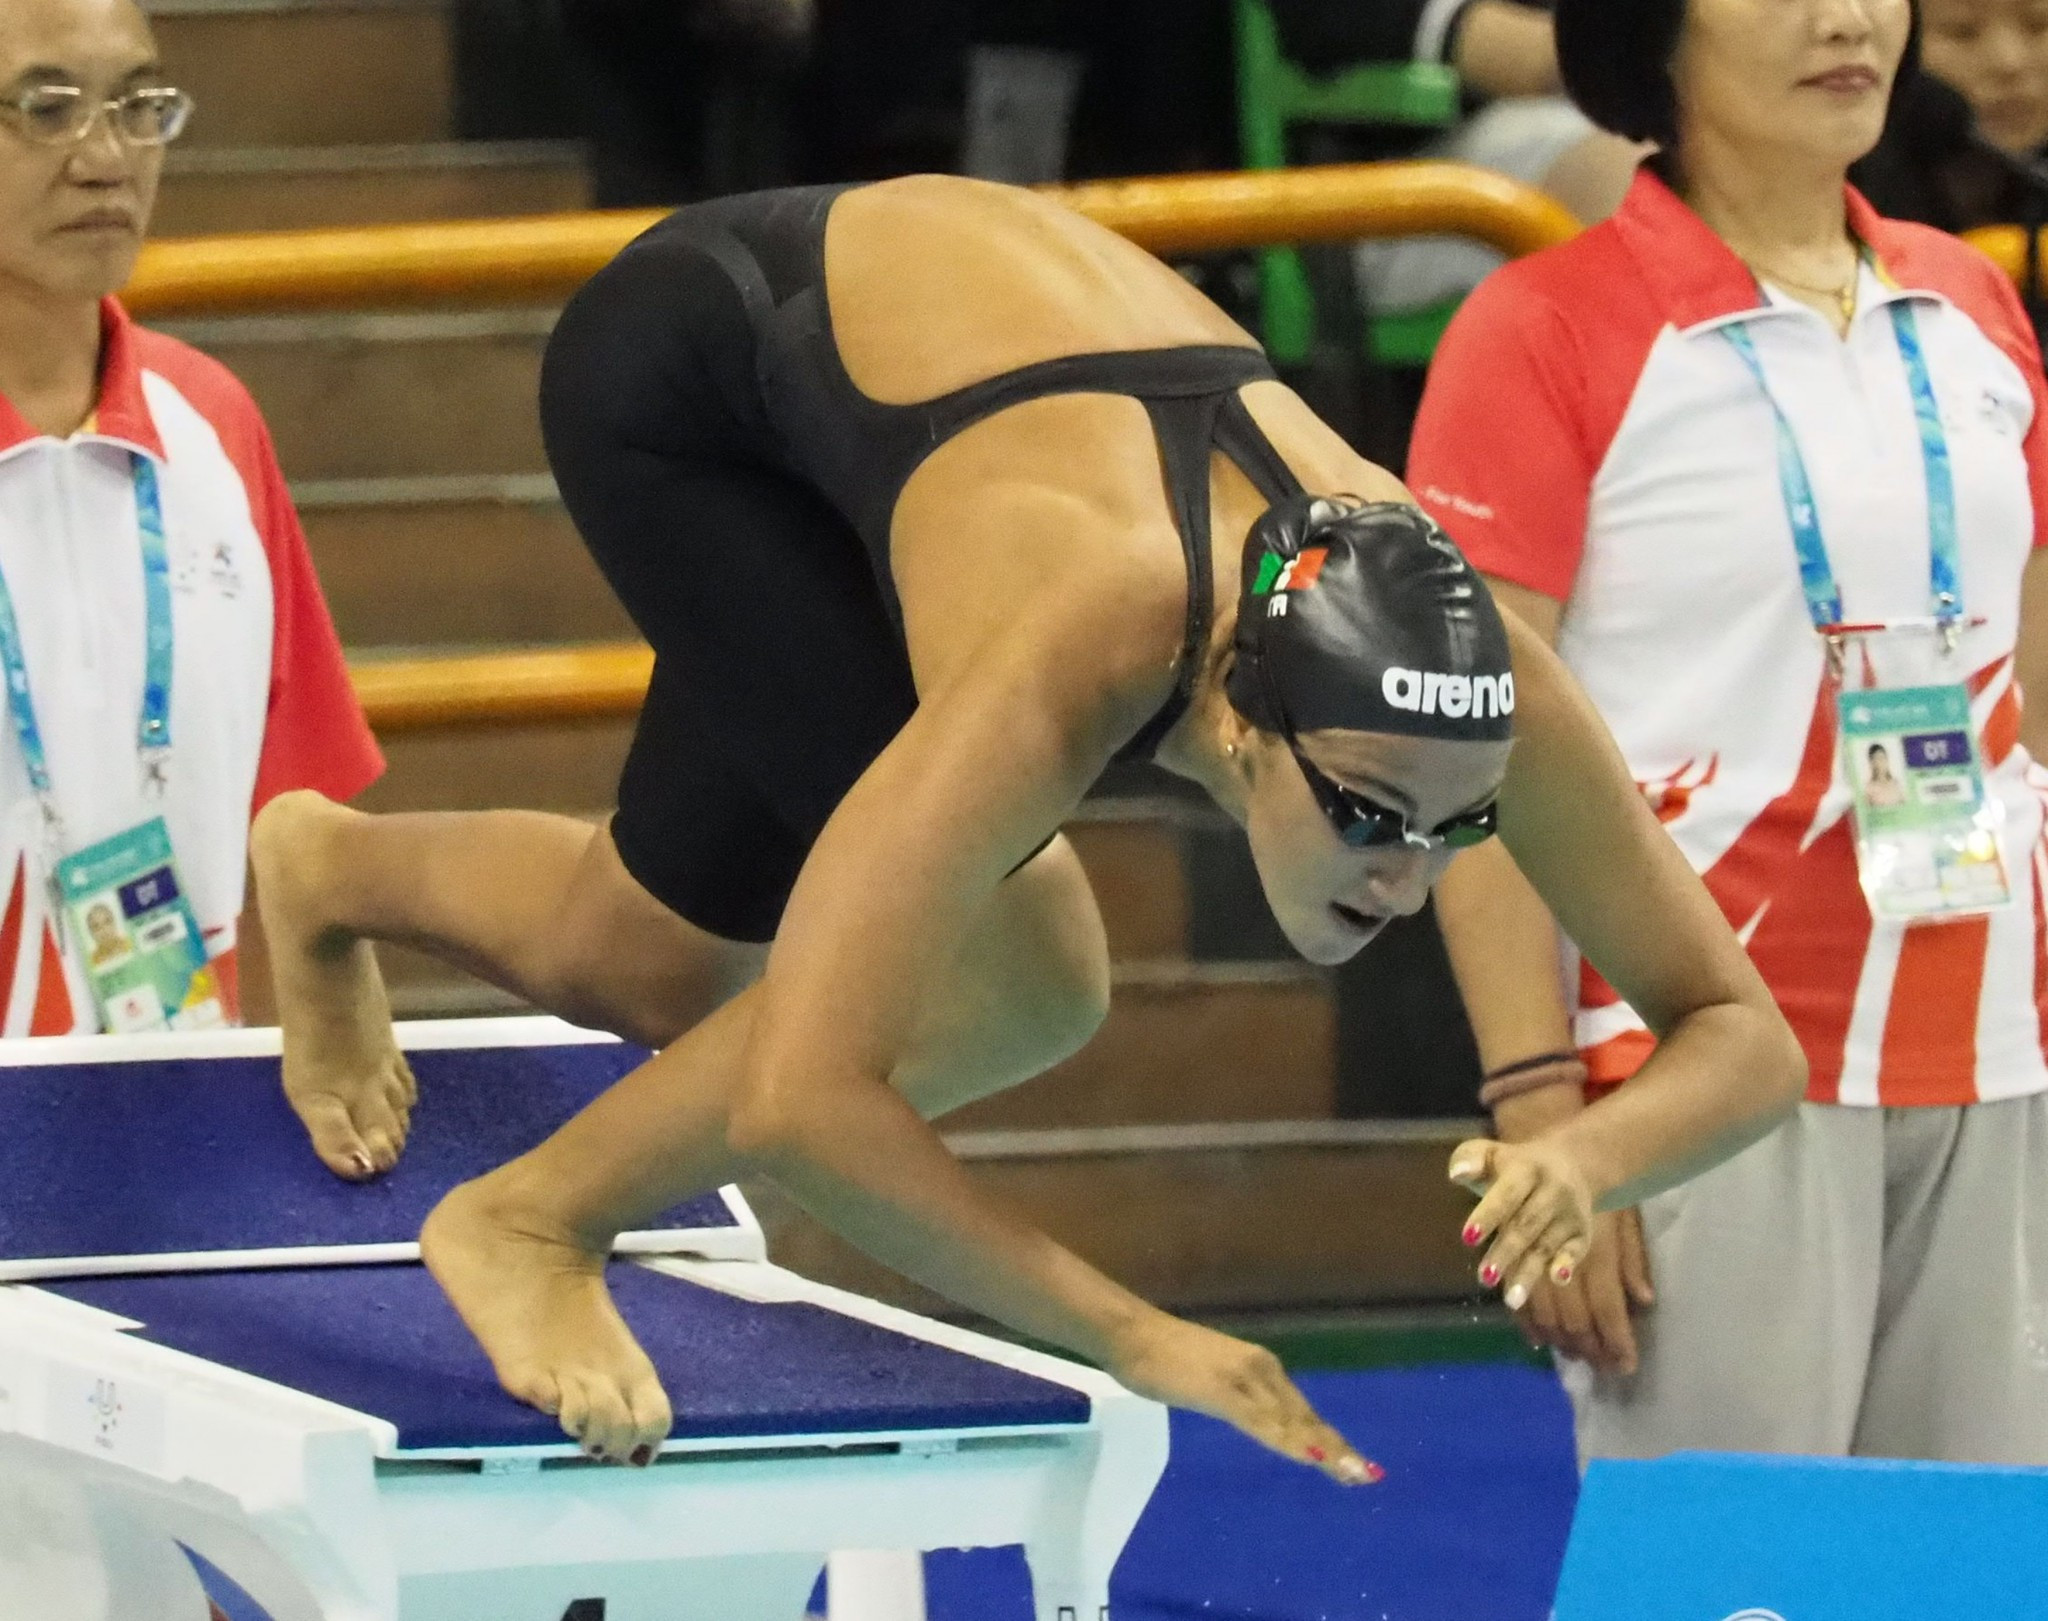 Simona Quadarella won the women's 1,500 metres freestyle title ©Taipei 2017